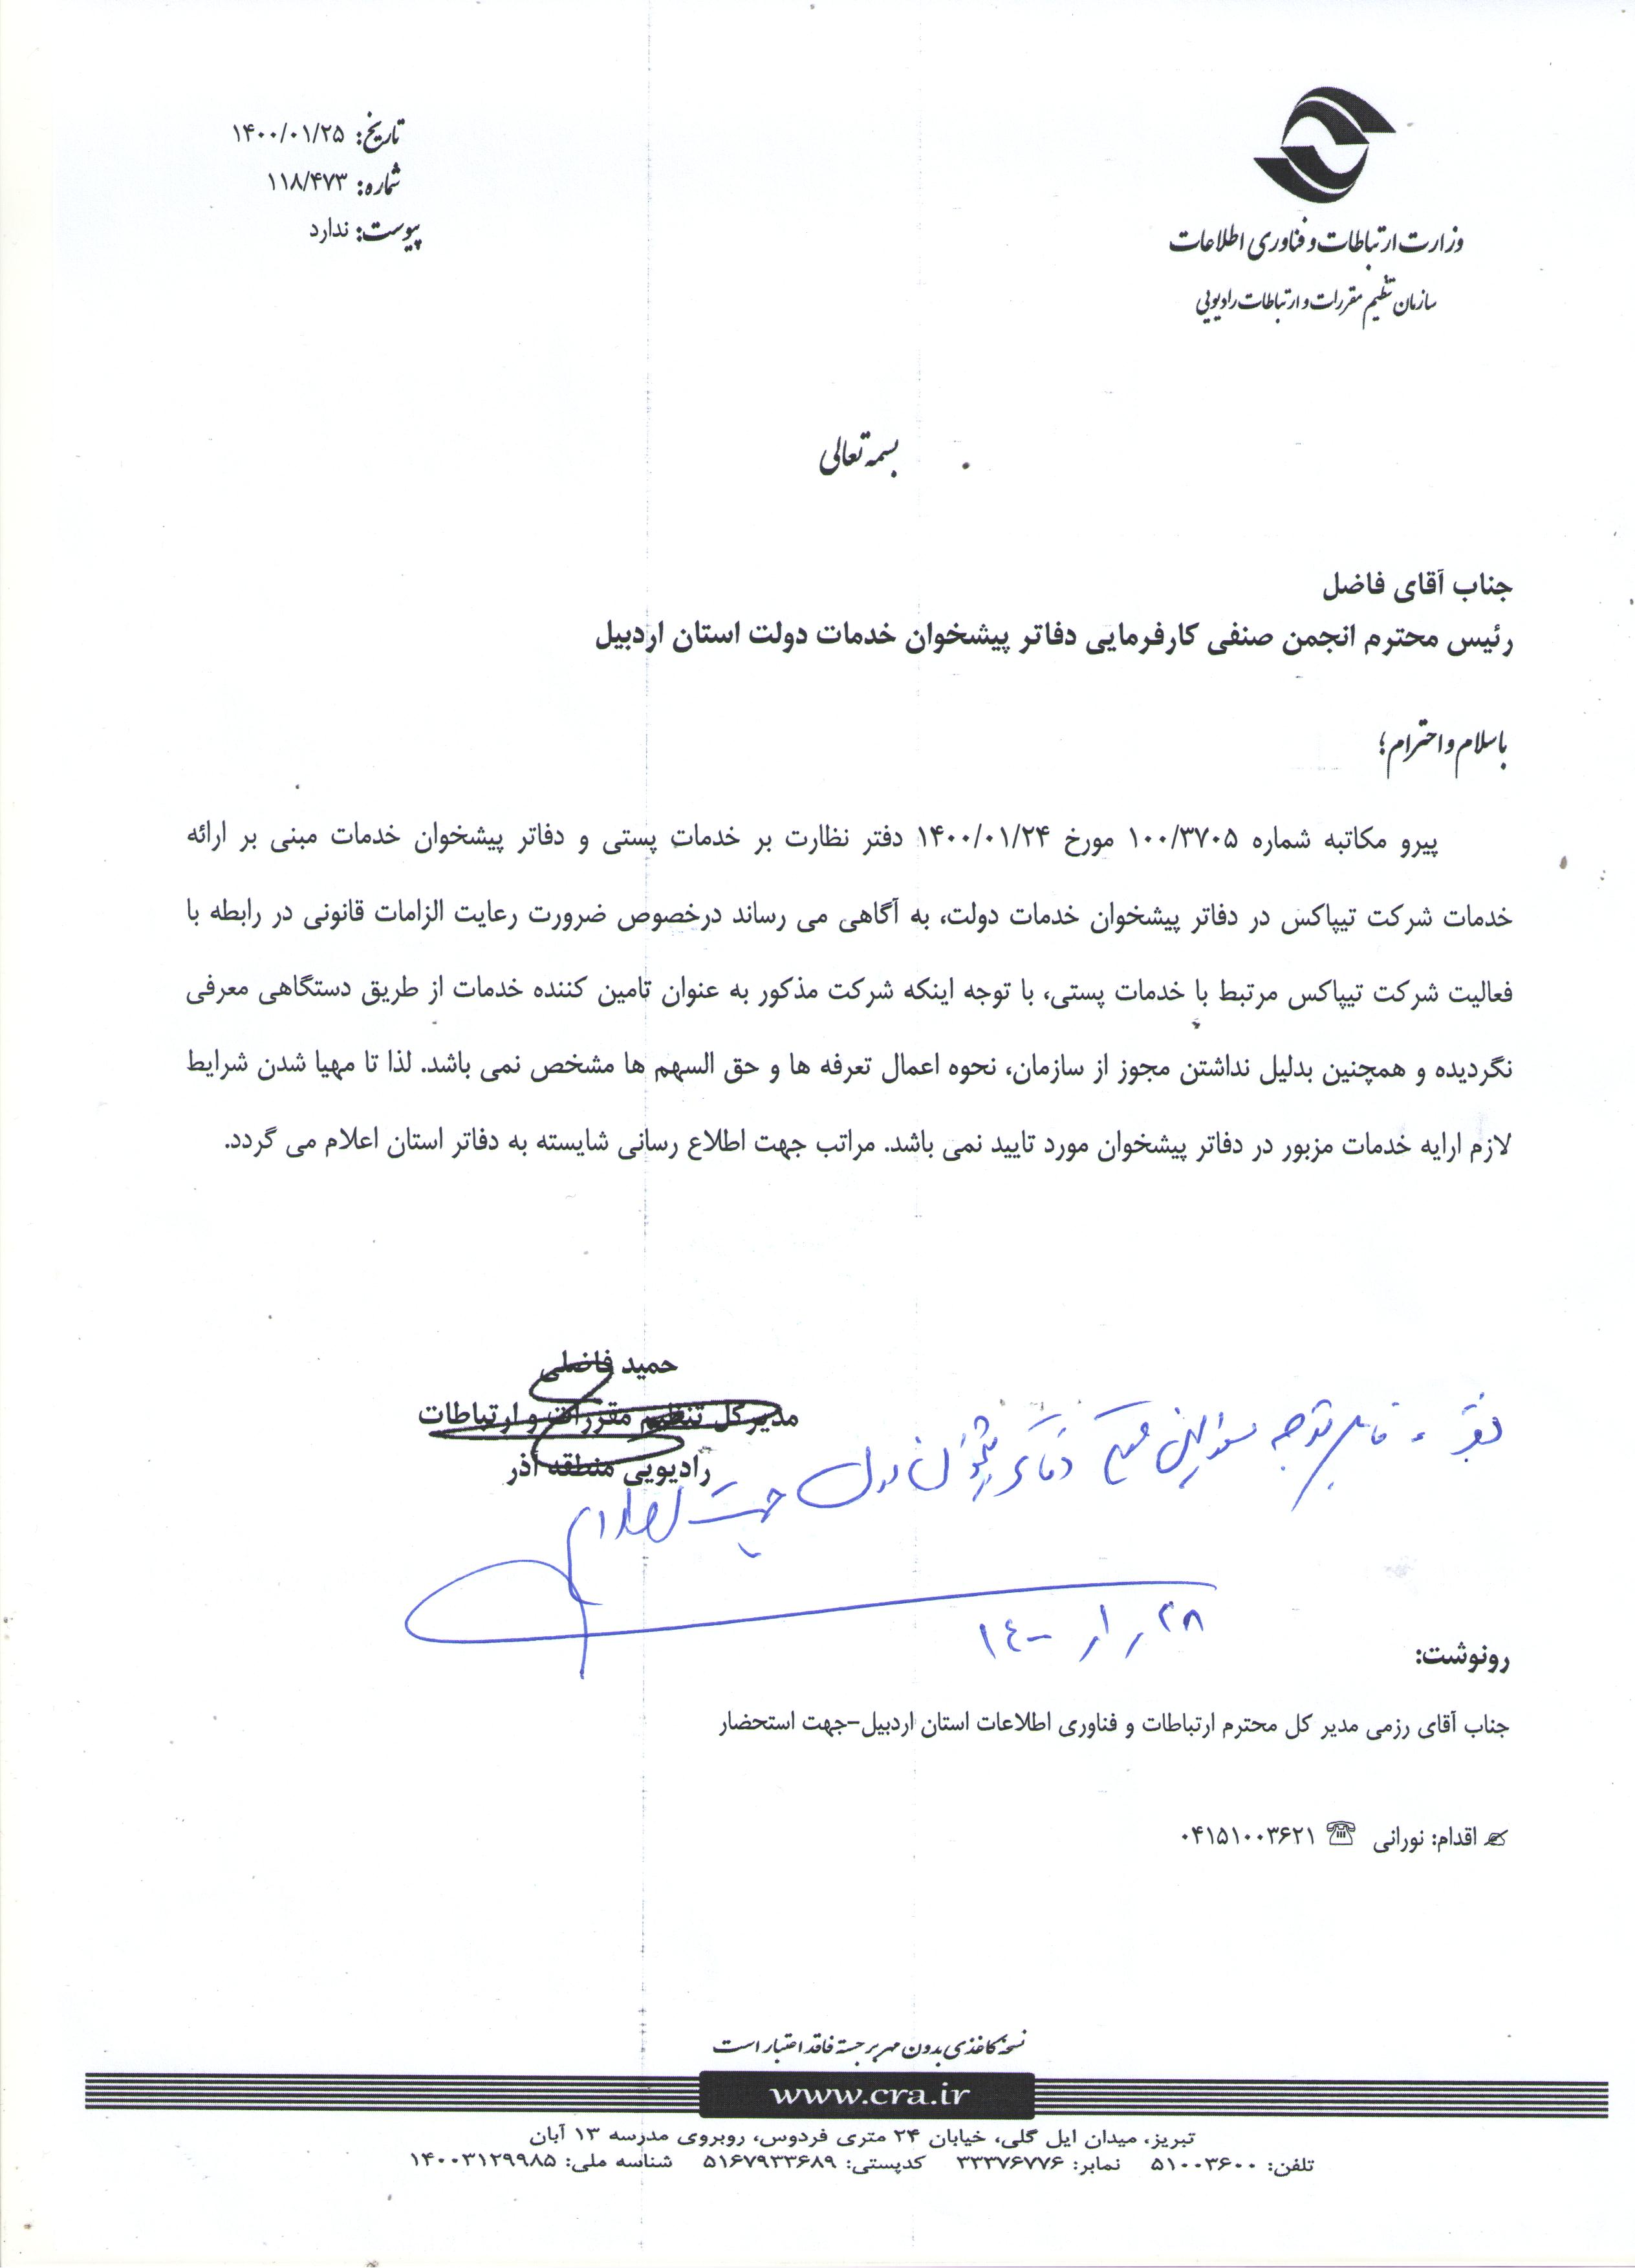 قابل توجه کلیه مسئولین محترم دفاتر پیشخوان خدمات دولت استان اردبیل- جهت اطلاع